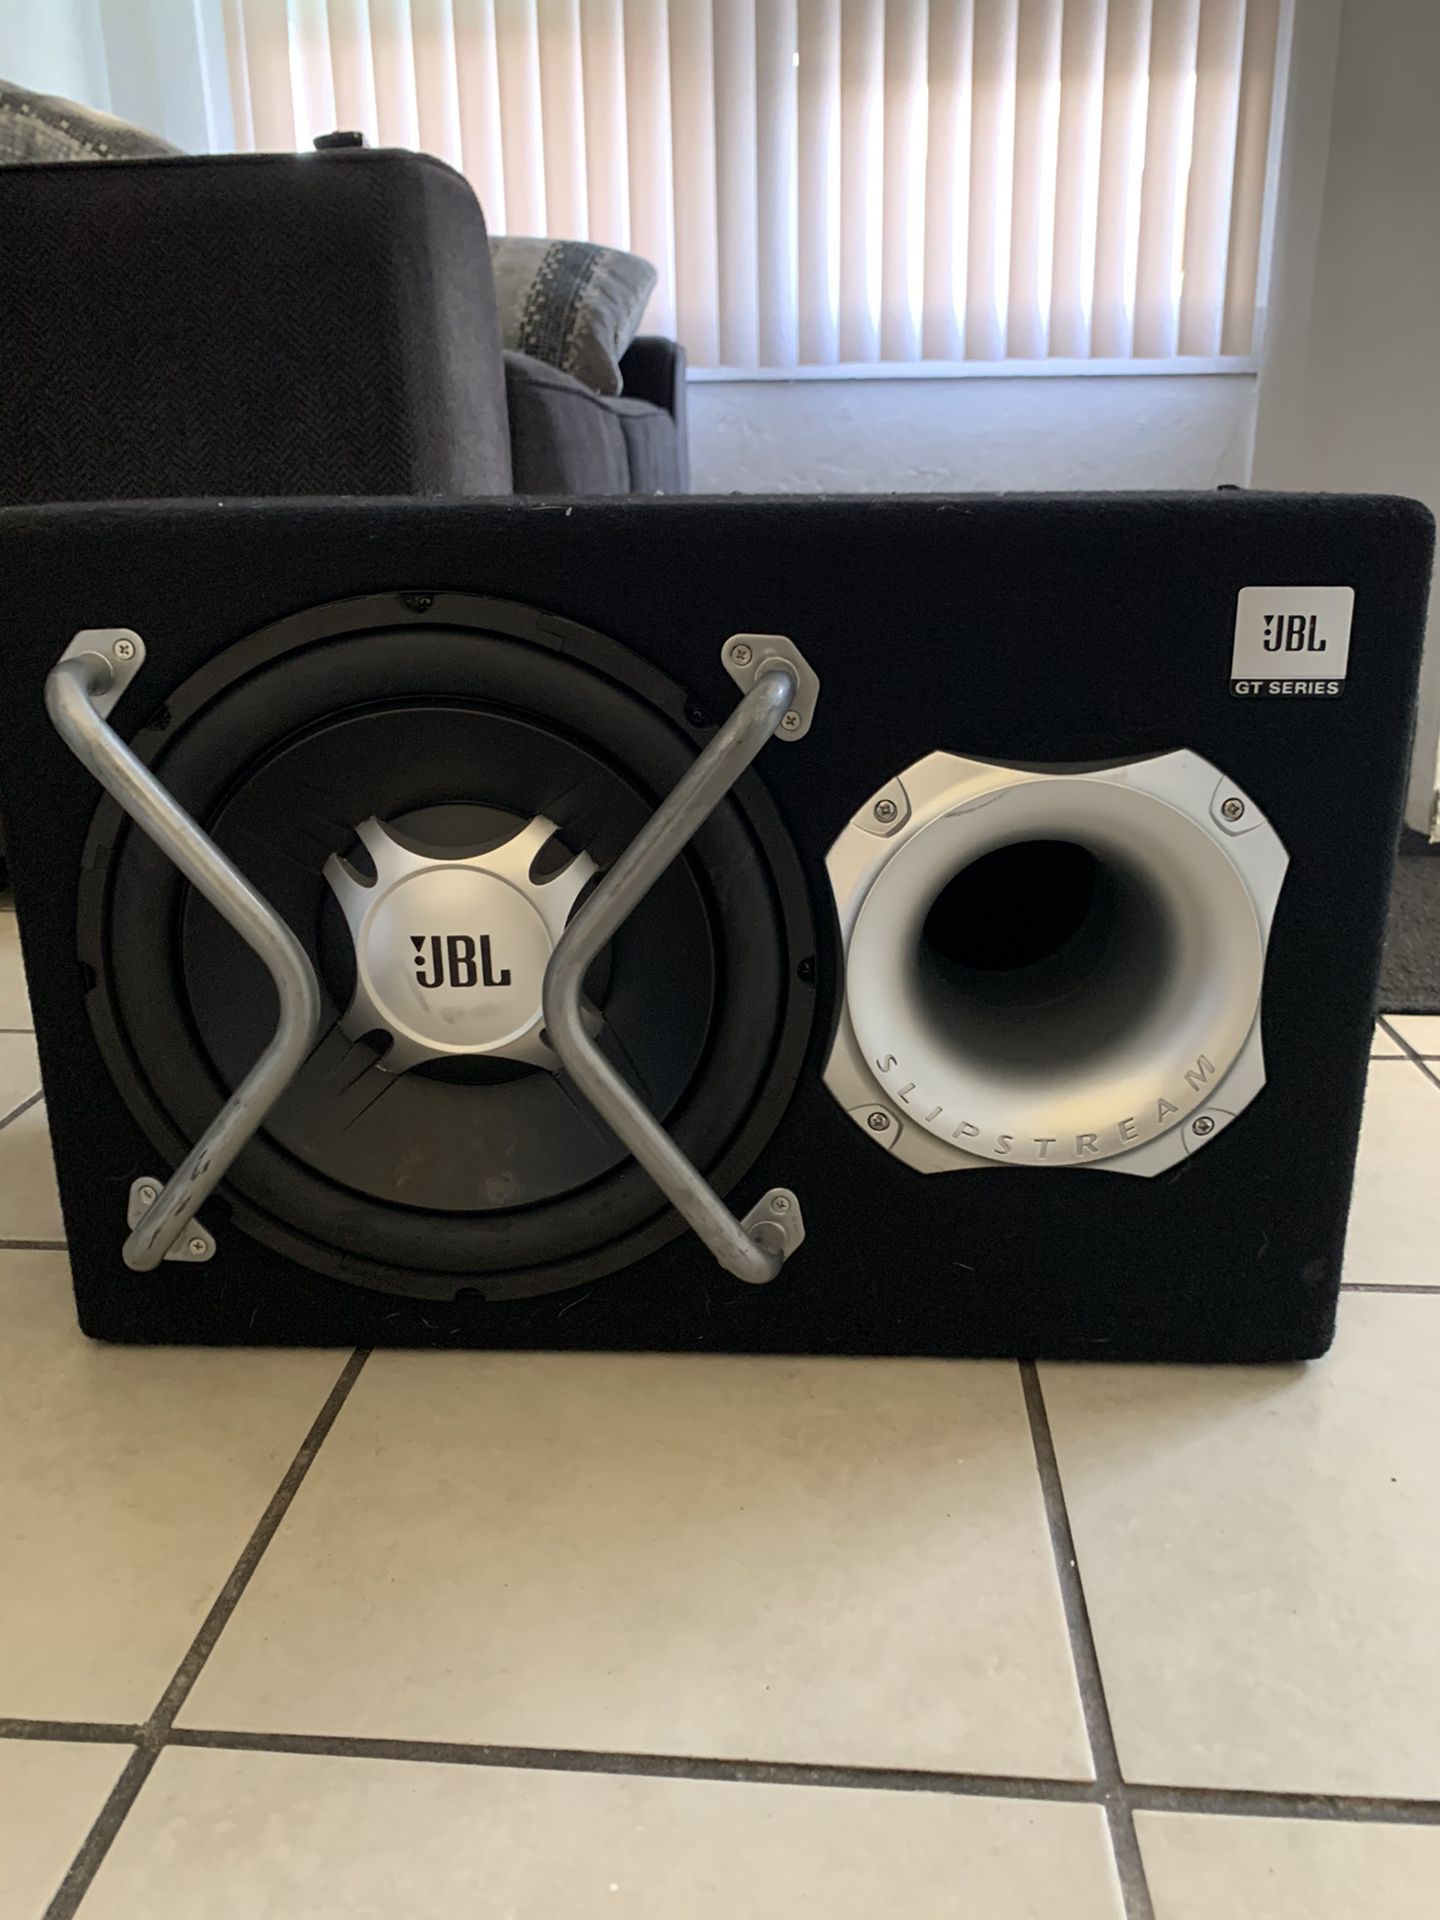 JBL 12” inch speaker with build in amplifier